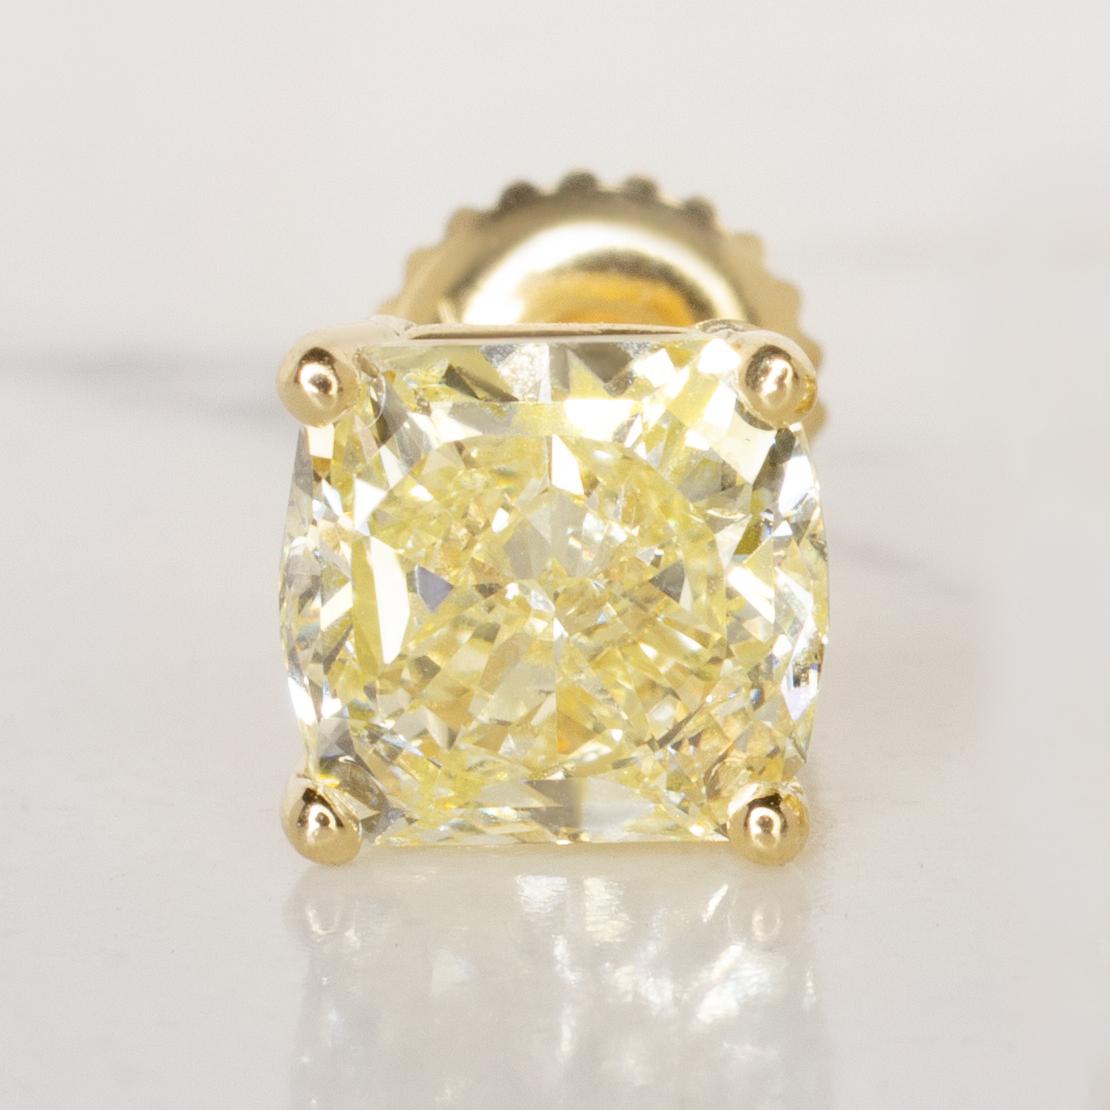 Ces boucles d'oreilles en or jaune sont composées d'un diamant certifié GIA de 2 carats de taille coussin, de couleur jaune fantaisie et sans défaut interne. 

Les diamants de taille coussin allient l'énergie d'un brillant rond à la symétrie d'une